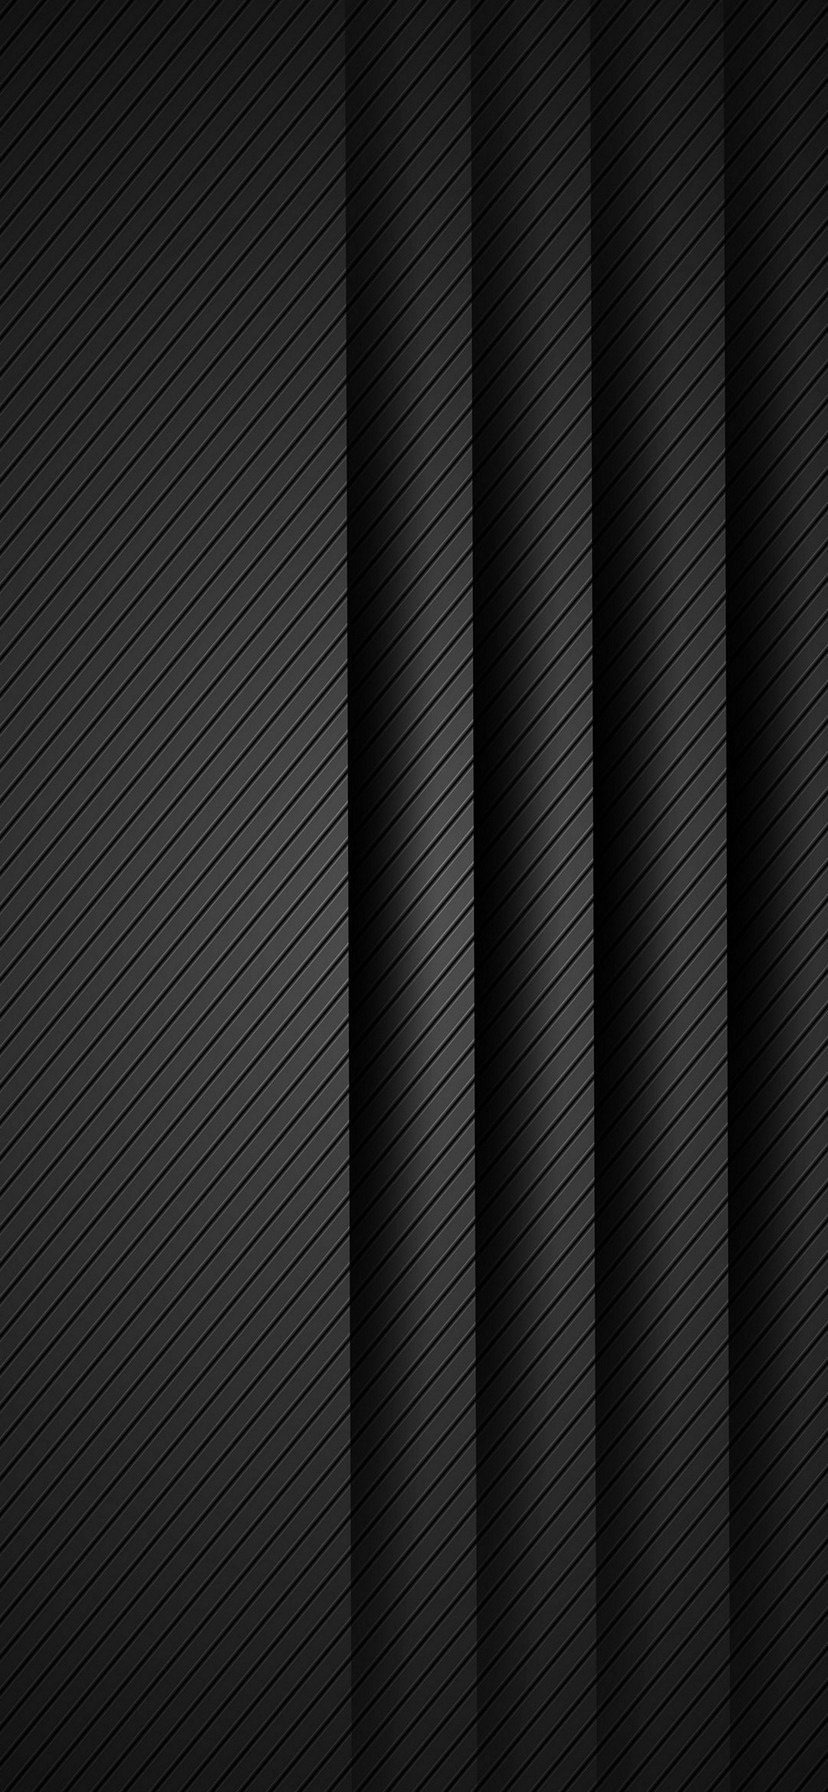 かっこいい Iphone 壁紙 黒 5318 かっこいい Iphone 壁紙 黒